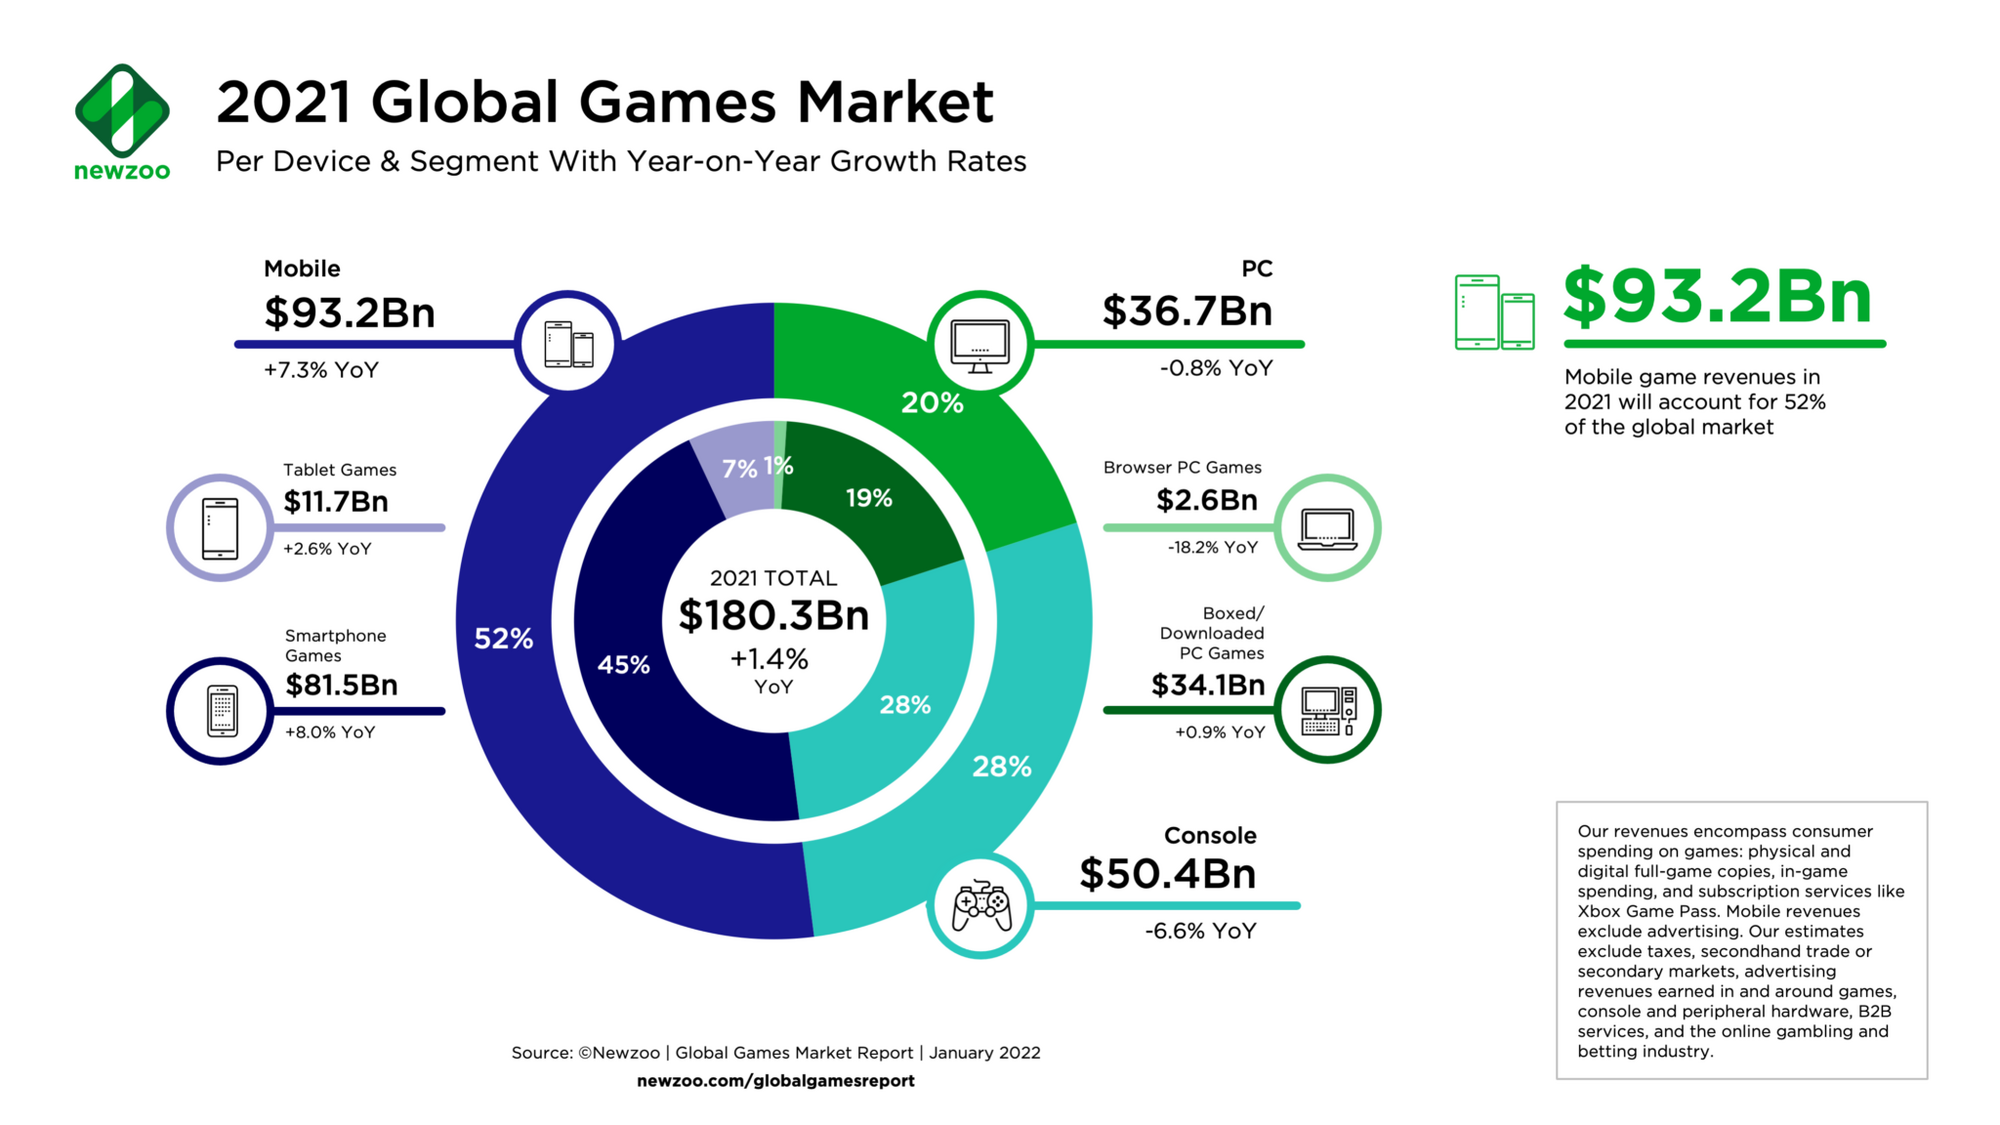 Hernému trhu z pohľadu príjmov dominuje segment mobilného hrania.